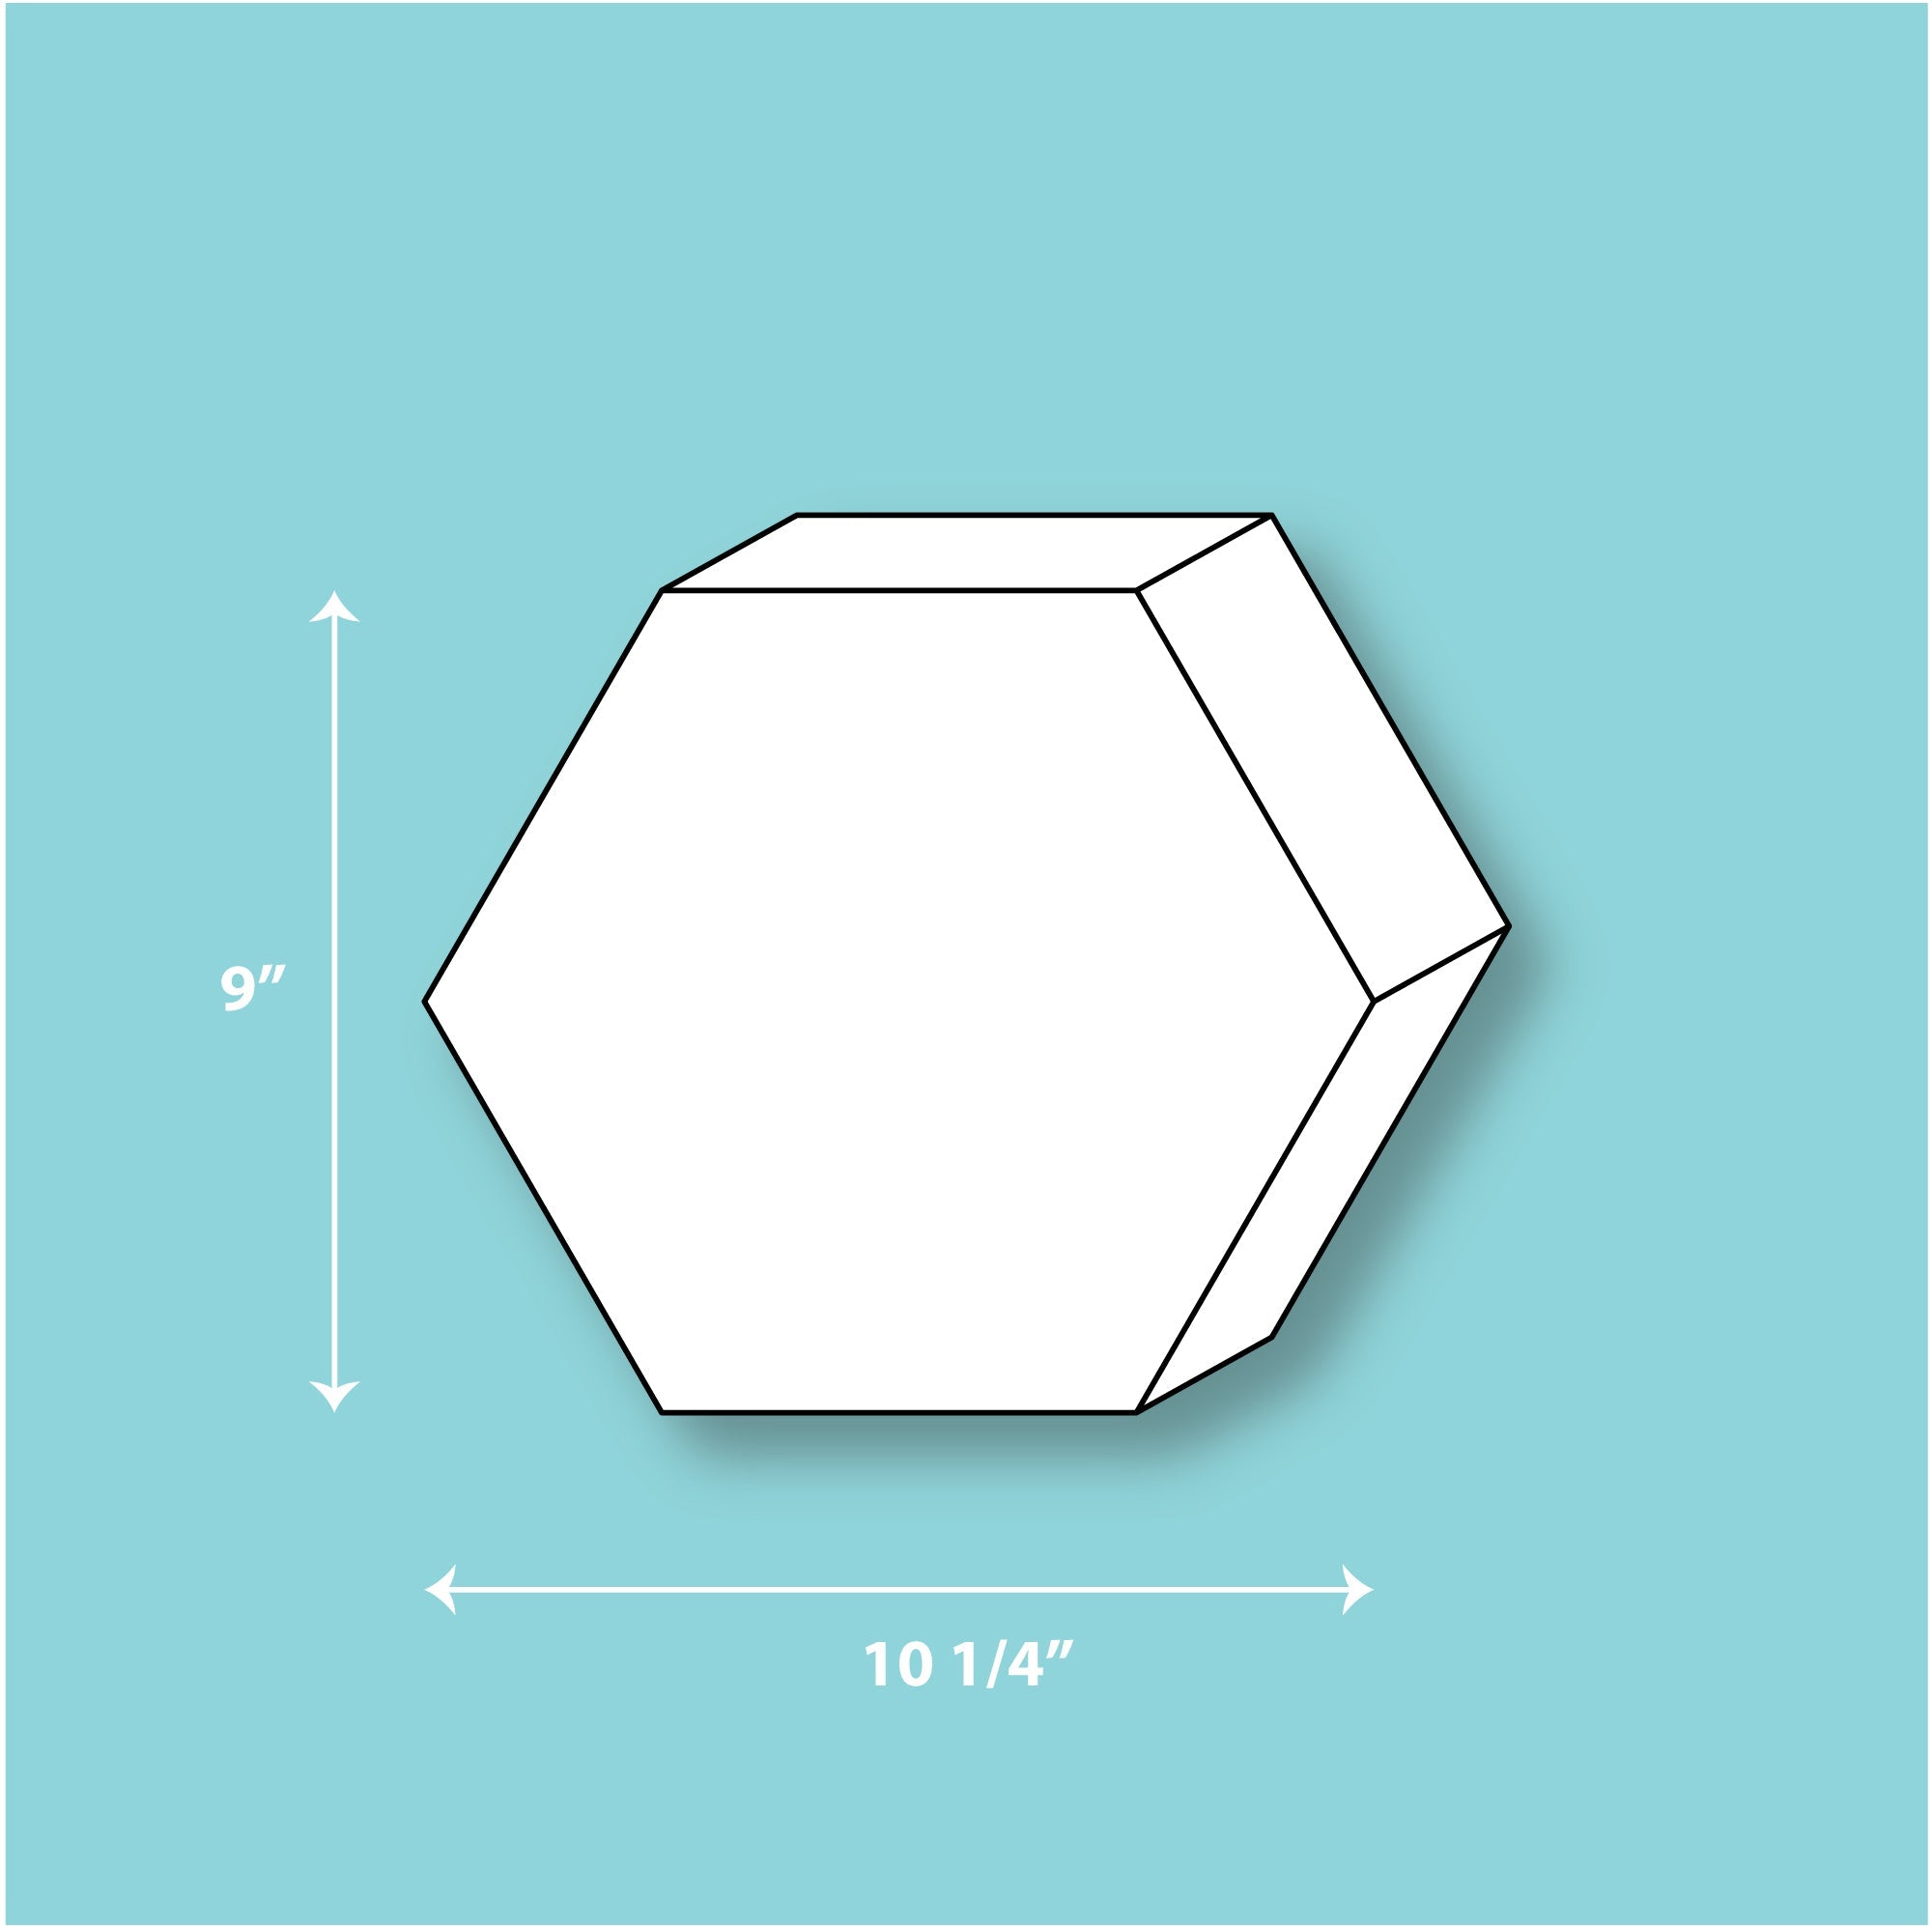 9" x 3" Hexagon Silicone Mold